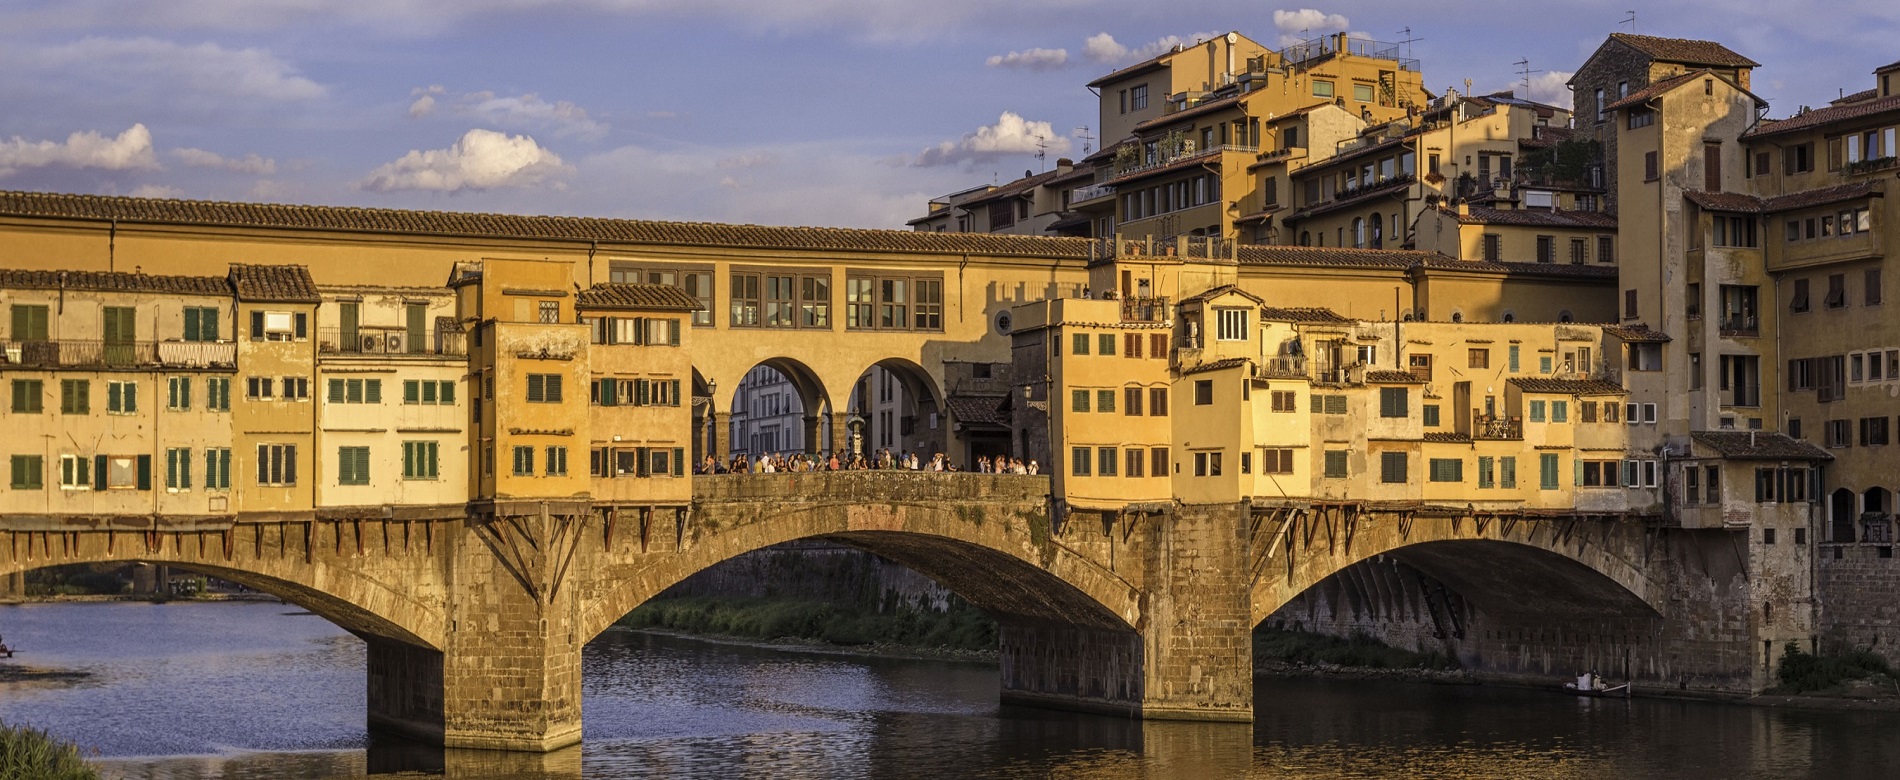 Puente Vecchio atravesando el río Arno en Florencia.